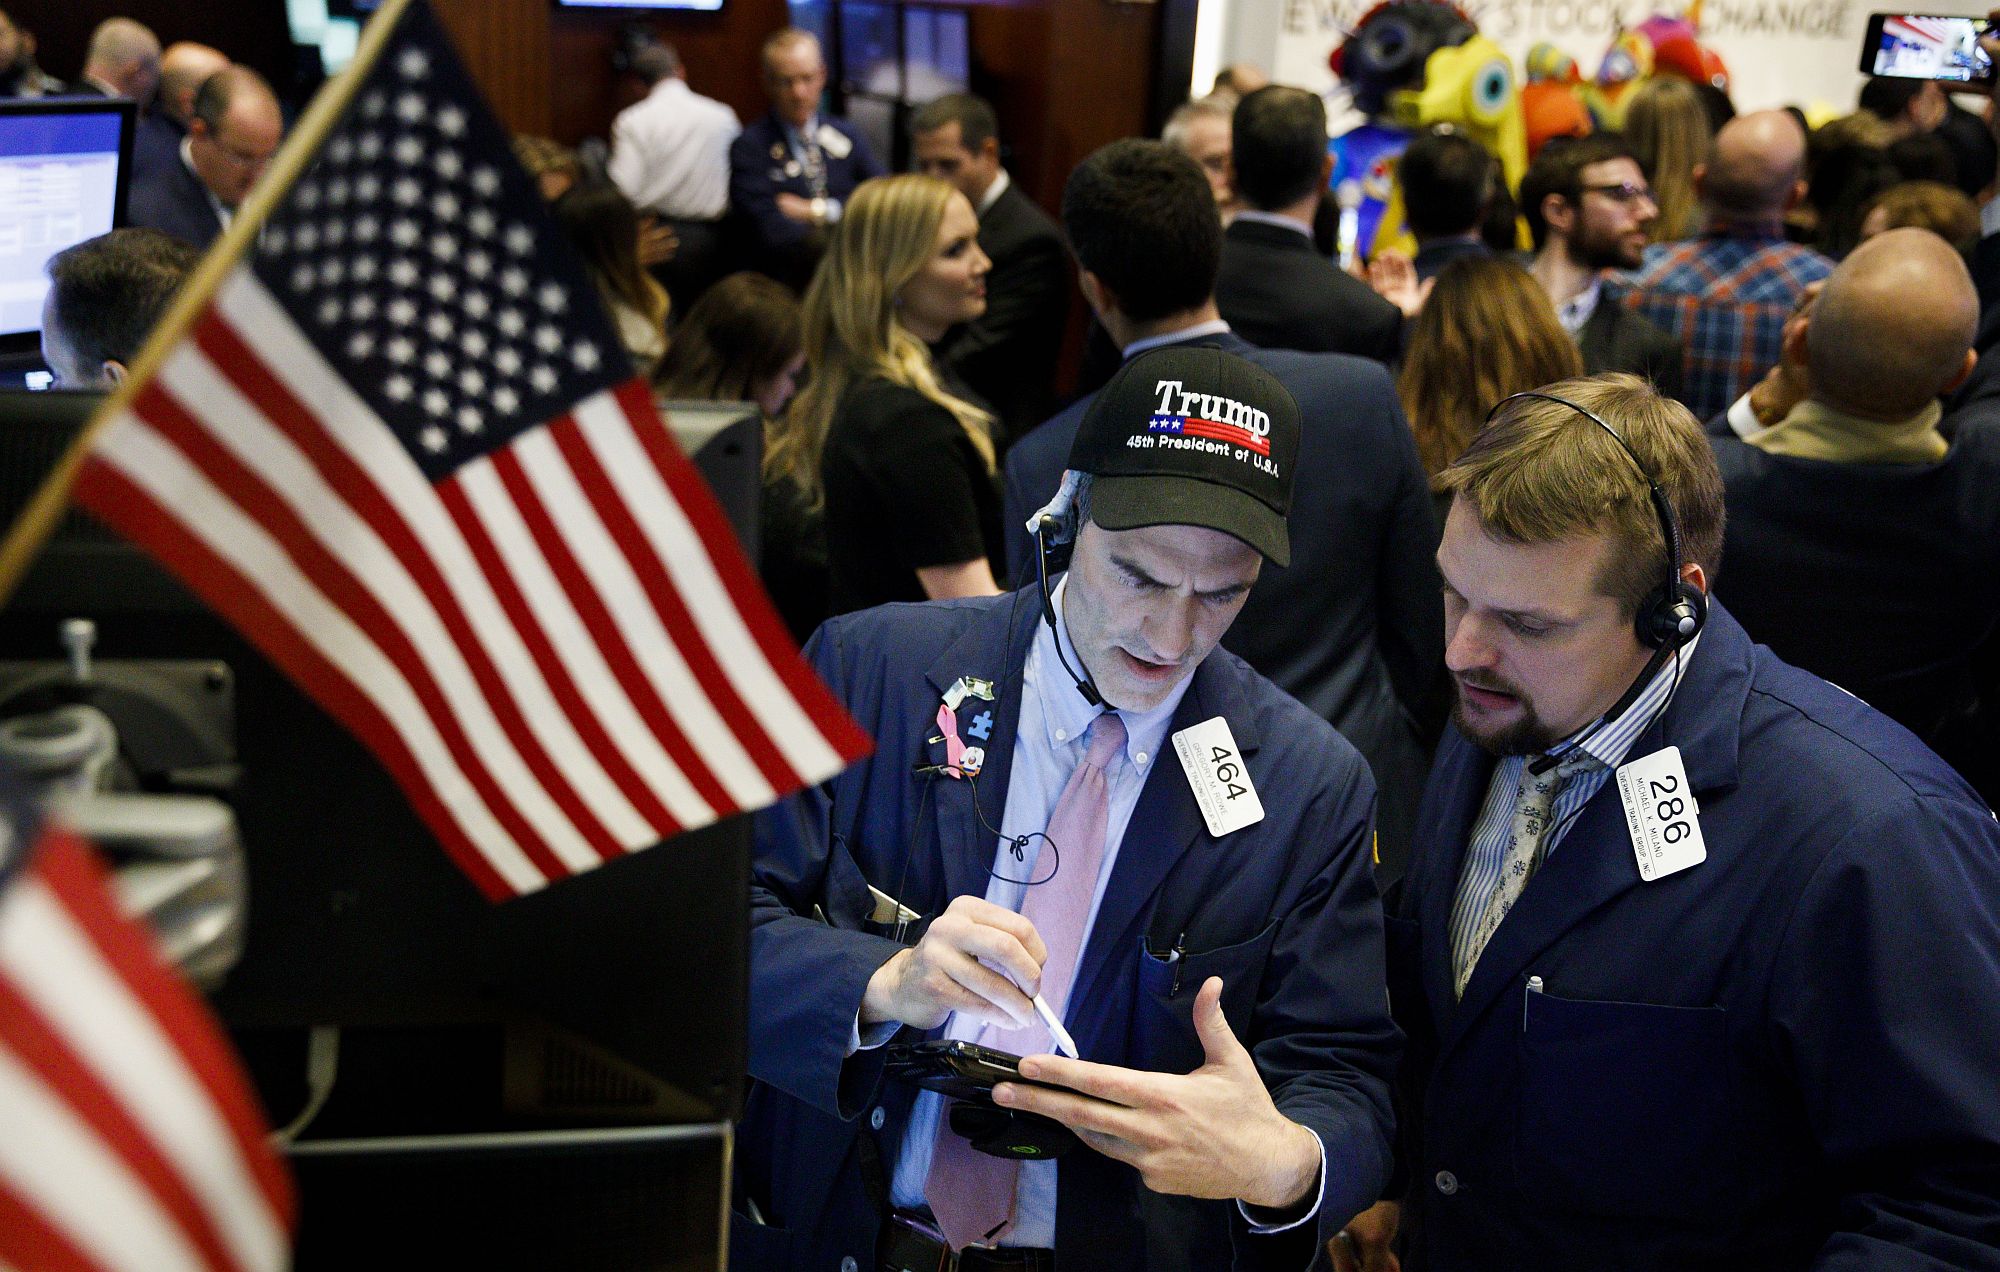 Tőzsdei kereskedő Trump sapkában a New York-i Értéktőzsdén 2017. november 30-án a kereskedési nap végén, miután a Dow Jones index először lépte át a 24.000 ponto szintet. EPA/JUSTIN LANE